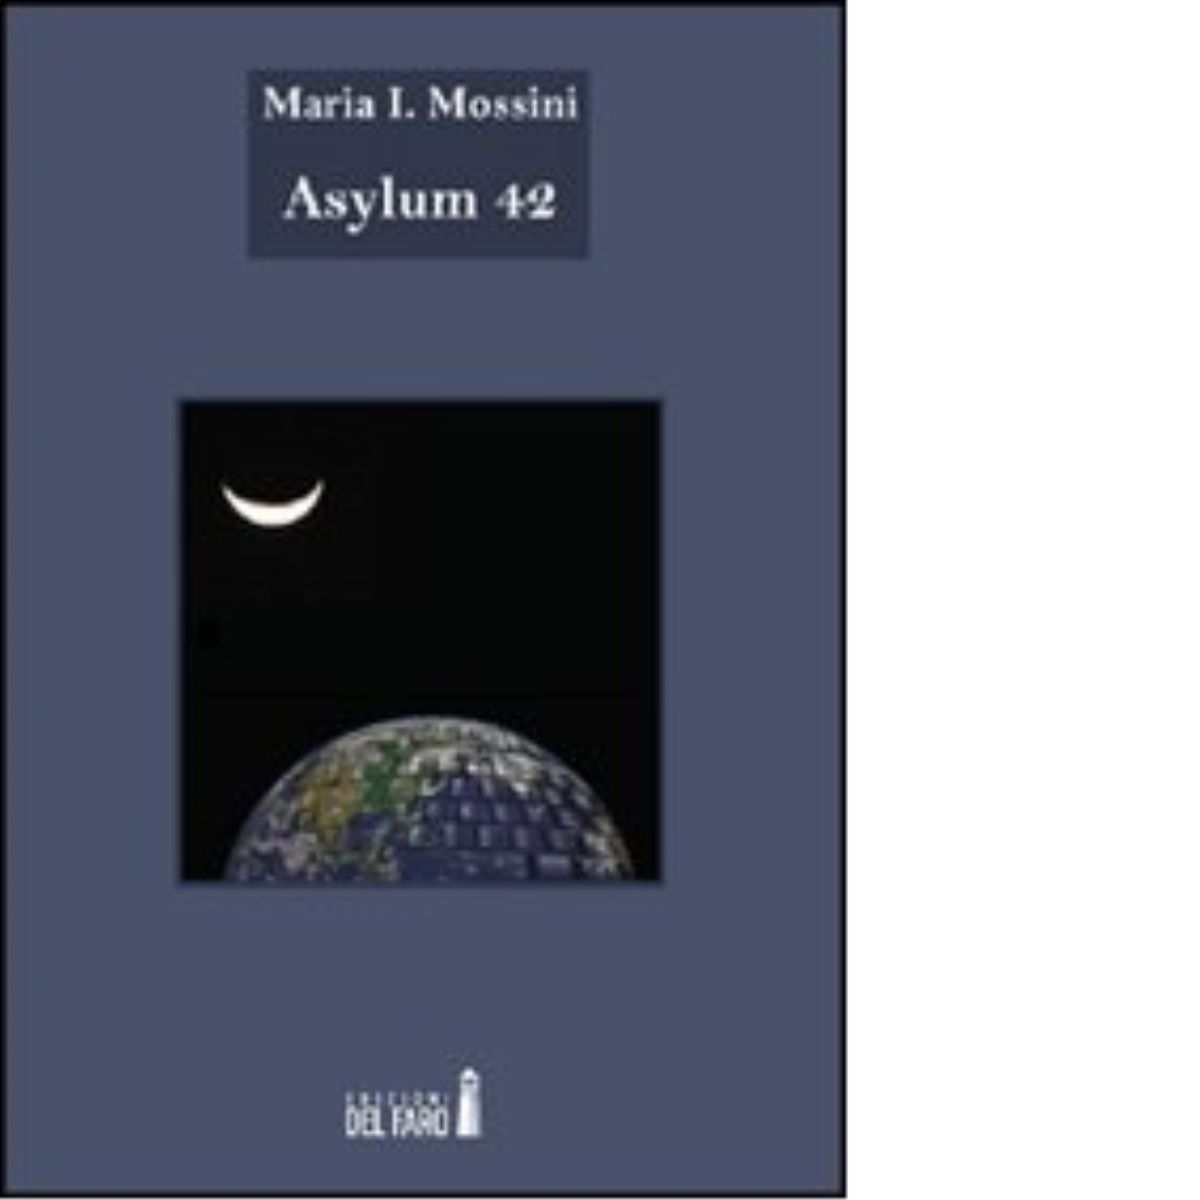 Asylum 42 di Maria I. Mossini - Edizioni Del Faro, 2012